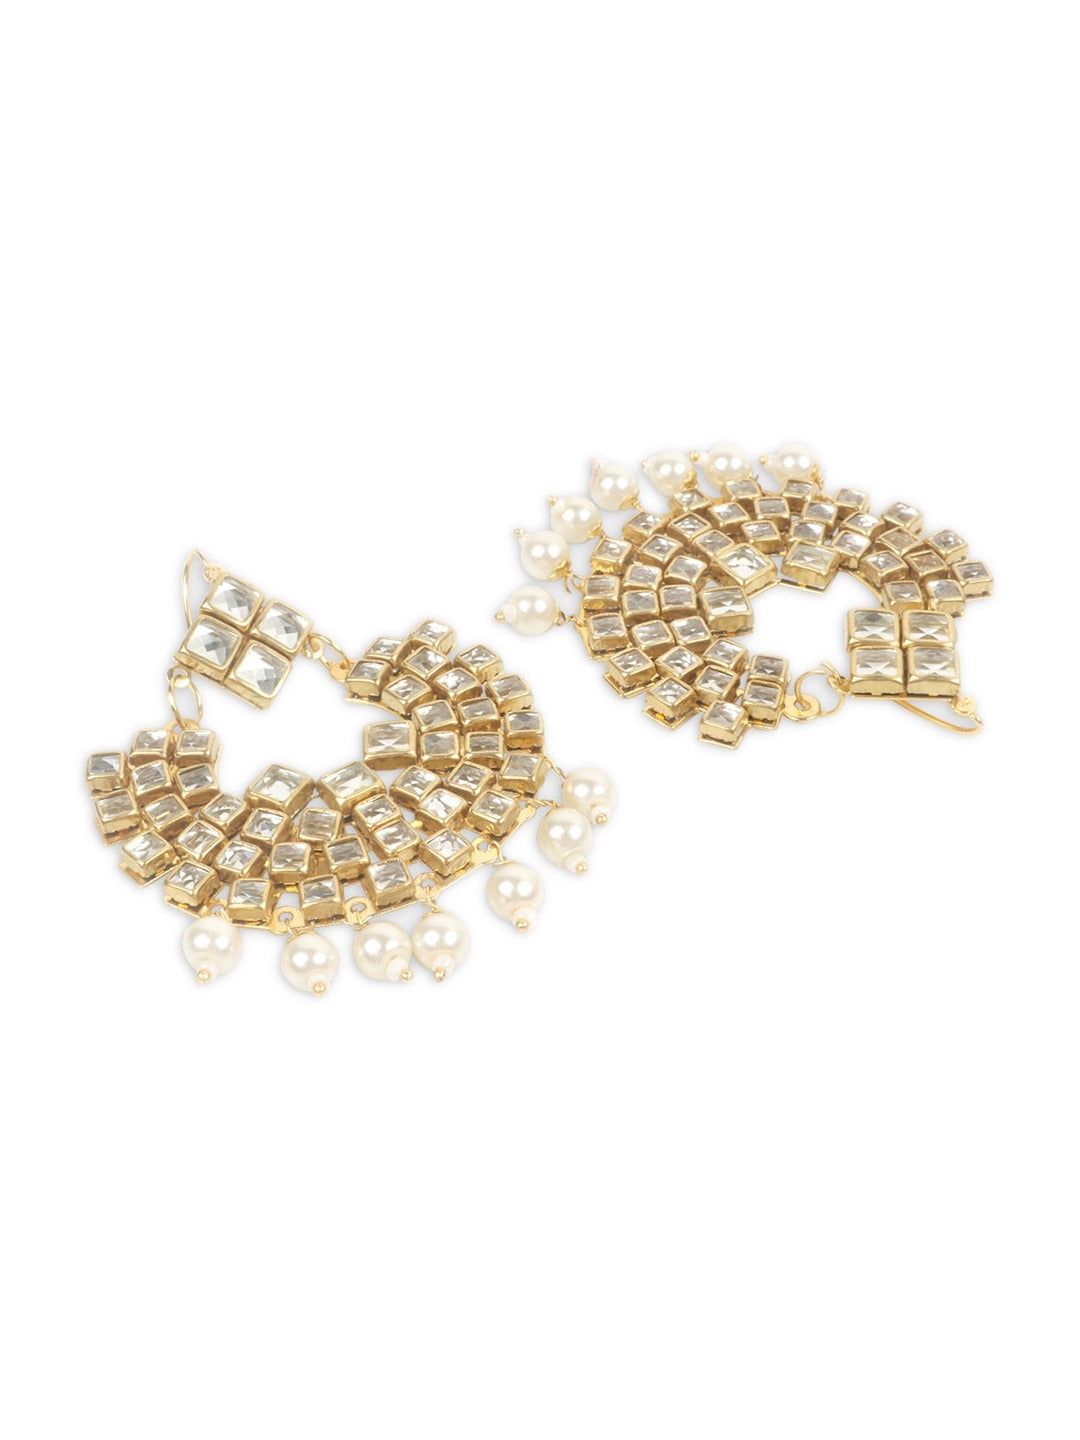 Gold-Plated White Kundan-Studded & Pearl Beaded Jadau Traditional Jewellery Set